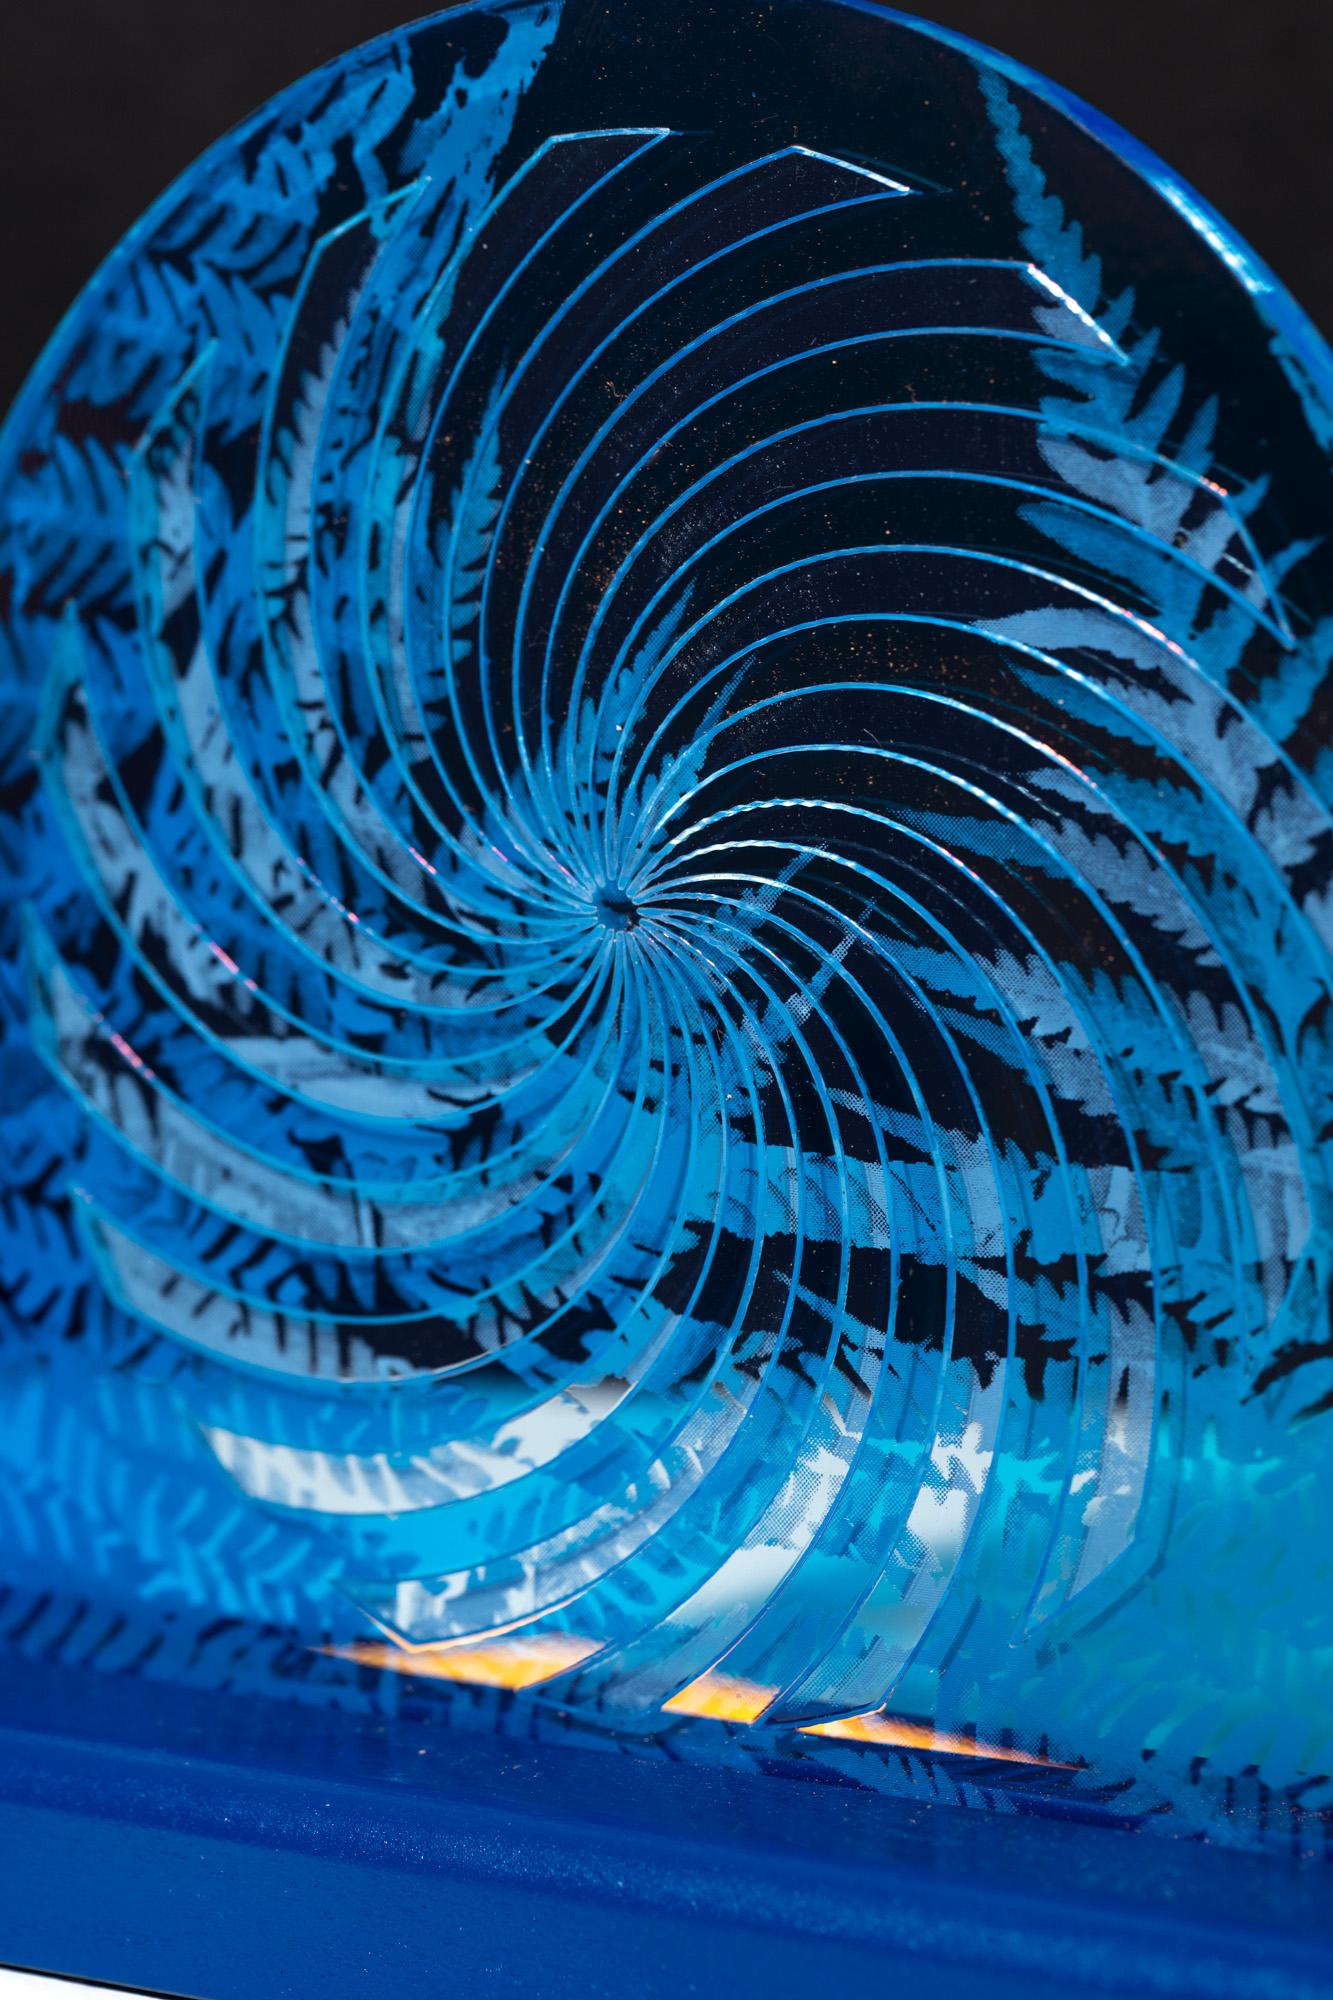 Fern Spiral Series 4 - Blue Abstract Sculpture by Roxana Azar